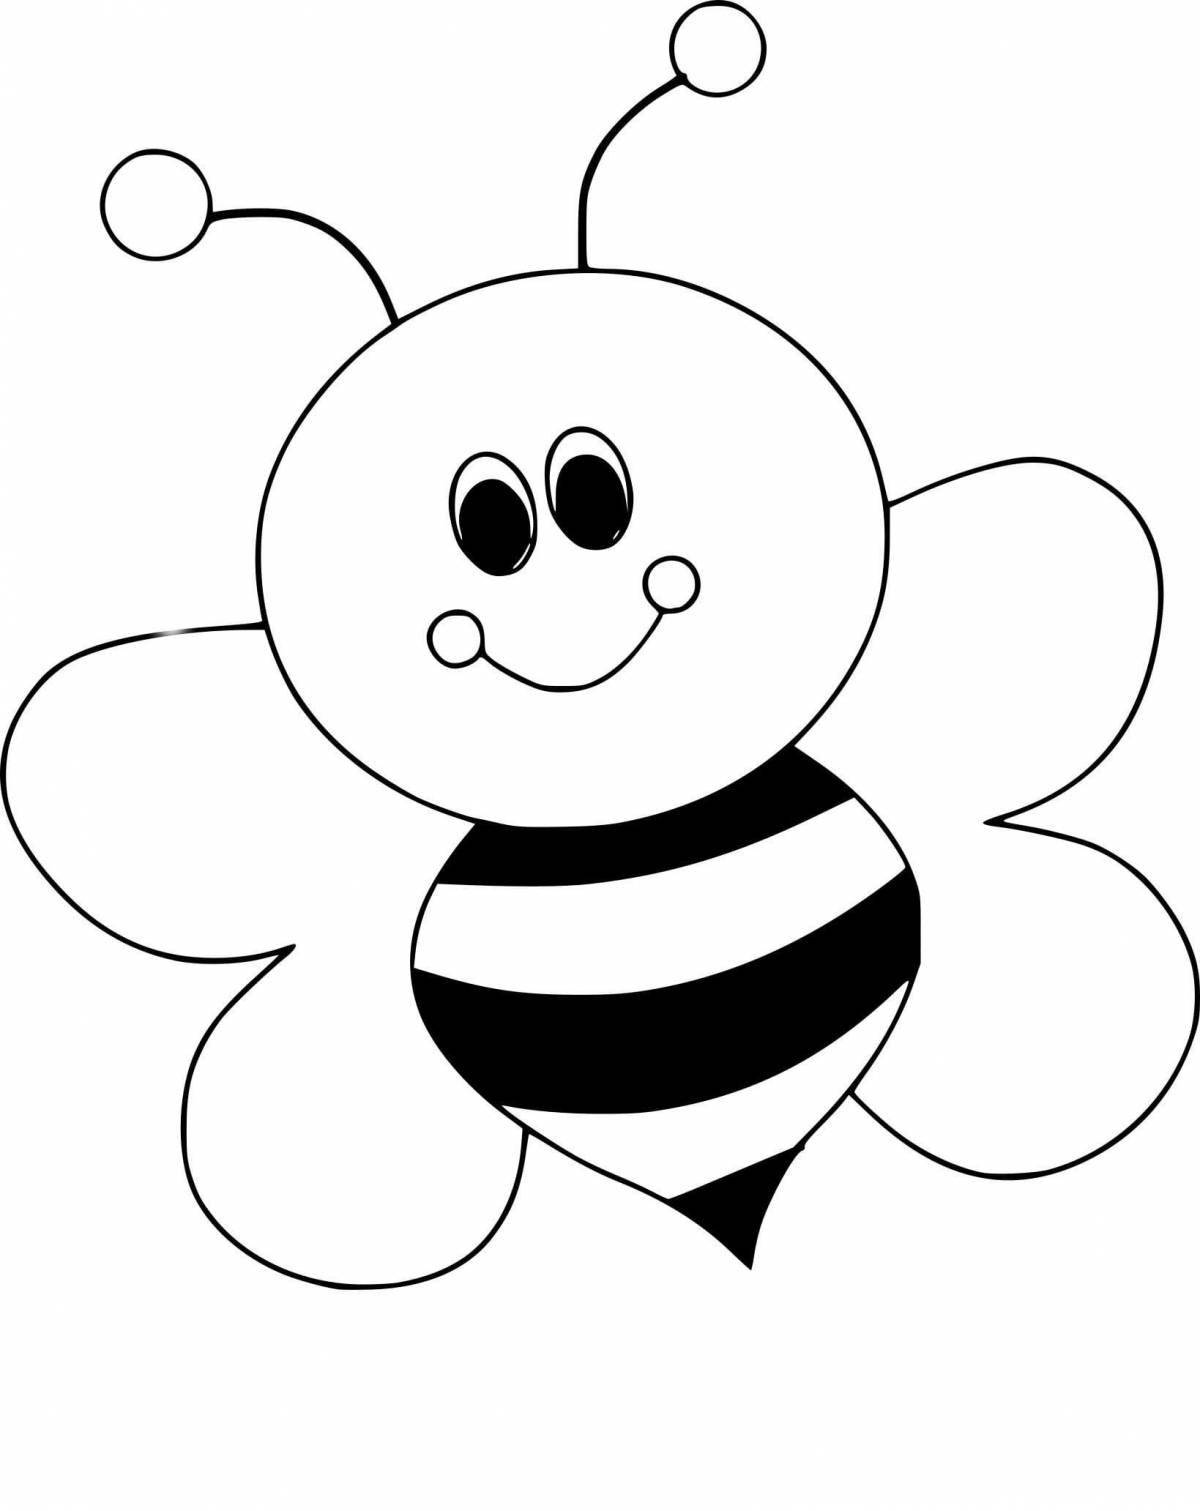 Увлекательная раскраска пчелы для детей